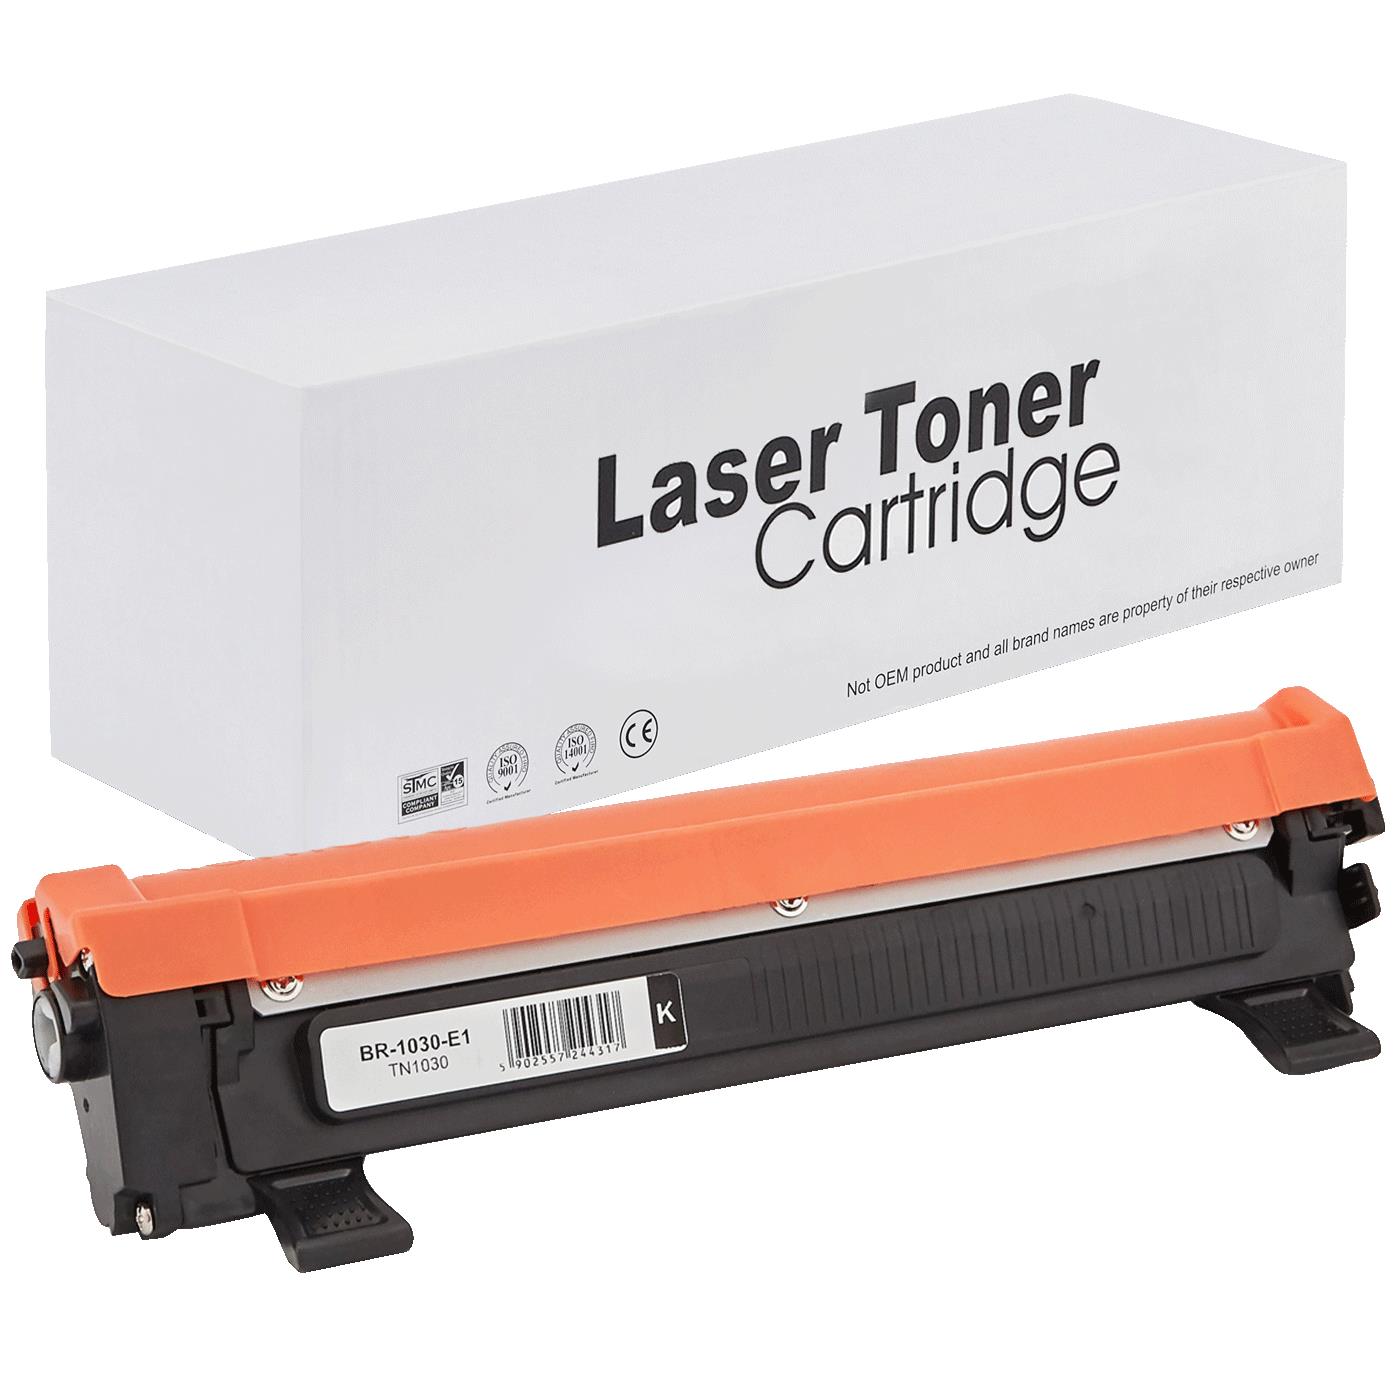 съвместима тонер касета за принтери и печатащи устройства на Brother 1112A Toner BR-1030 | TN1030 / TN1050 / TN-1030. Ниски цени, прецизно изпълнение, високо качество.